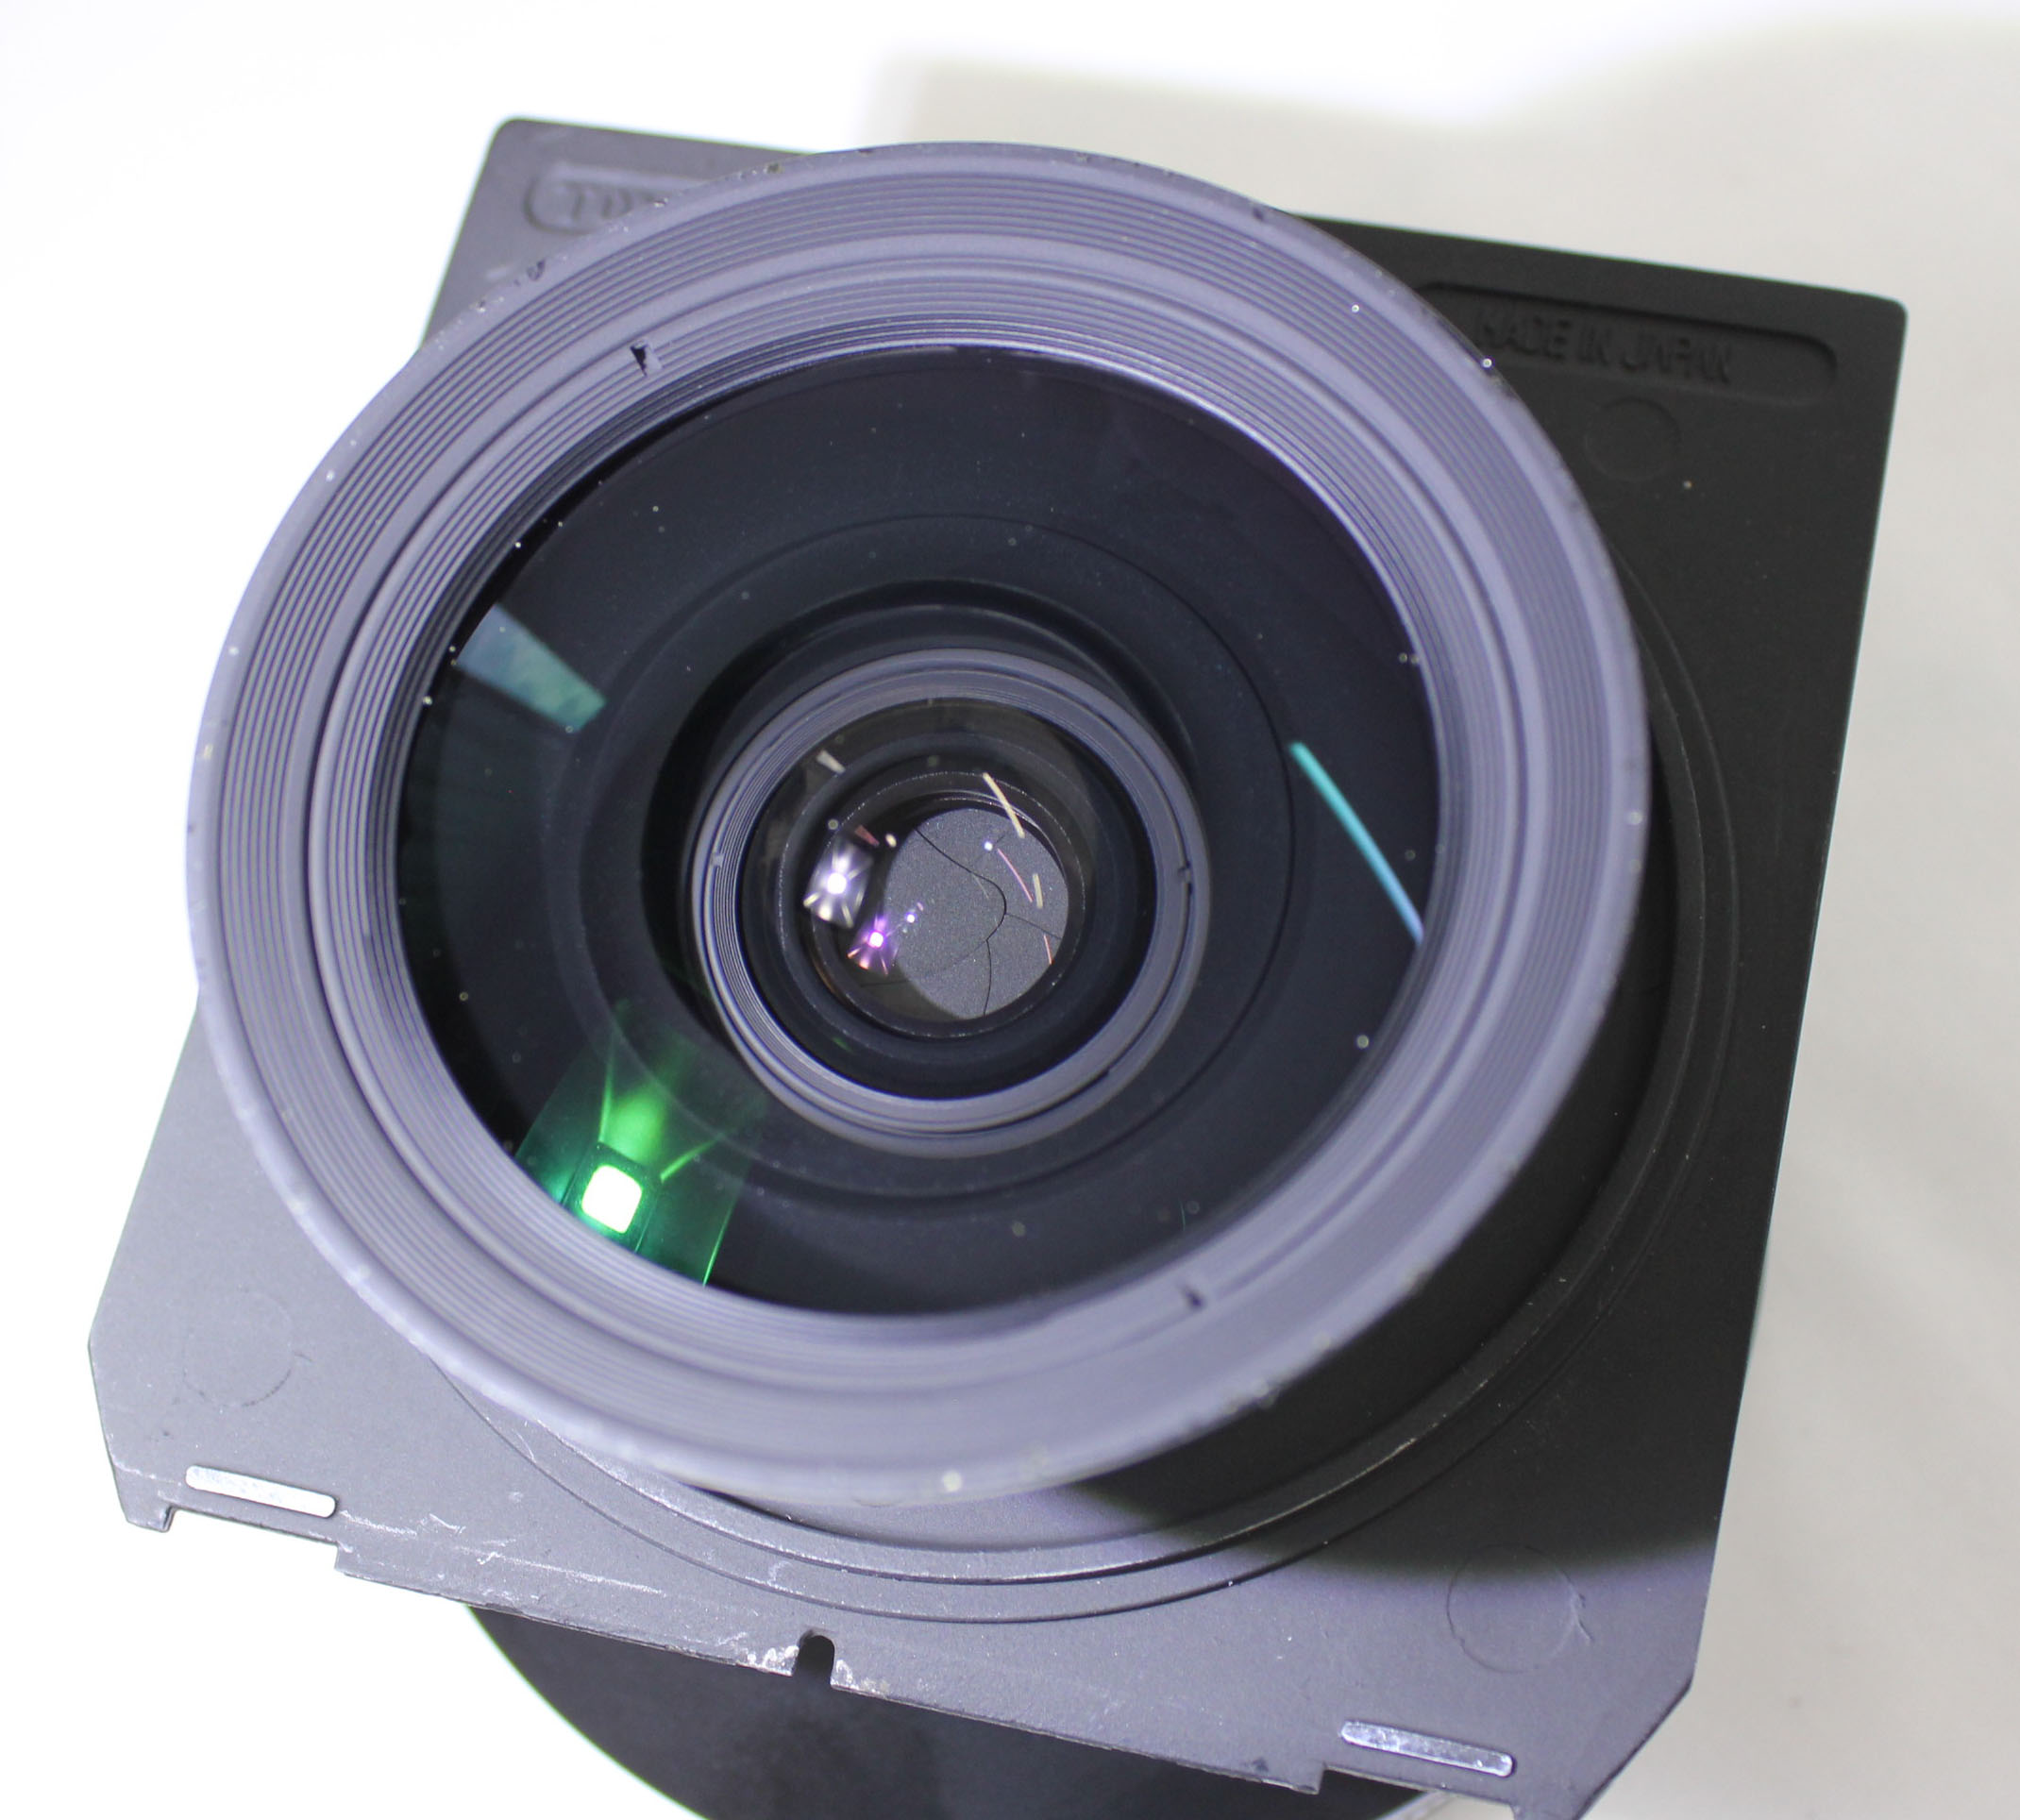  Schneider Kreuznach Super Angulon 72mm F/5.6 XL 115 MC Copal 0 Lens from Japan Photo 9